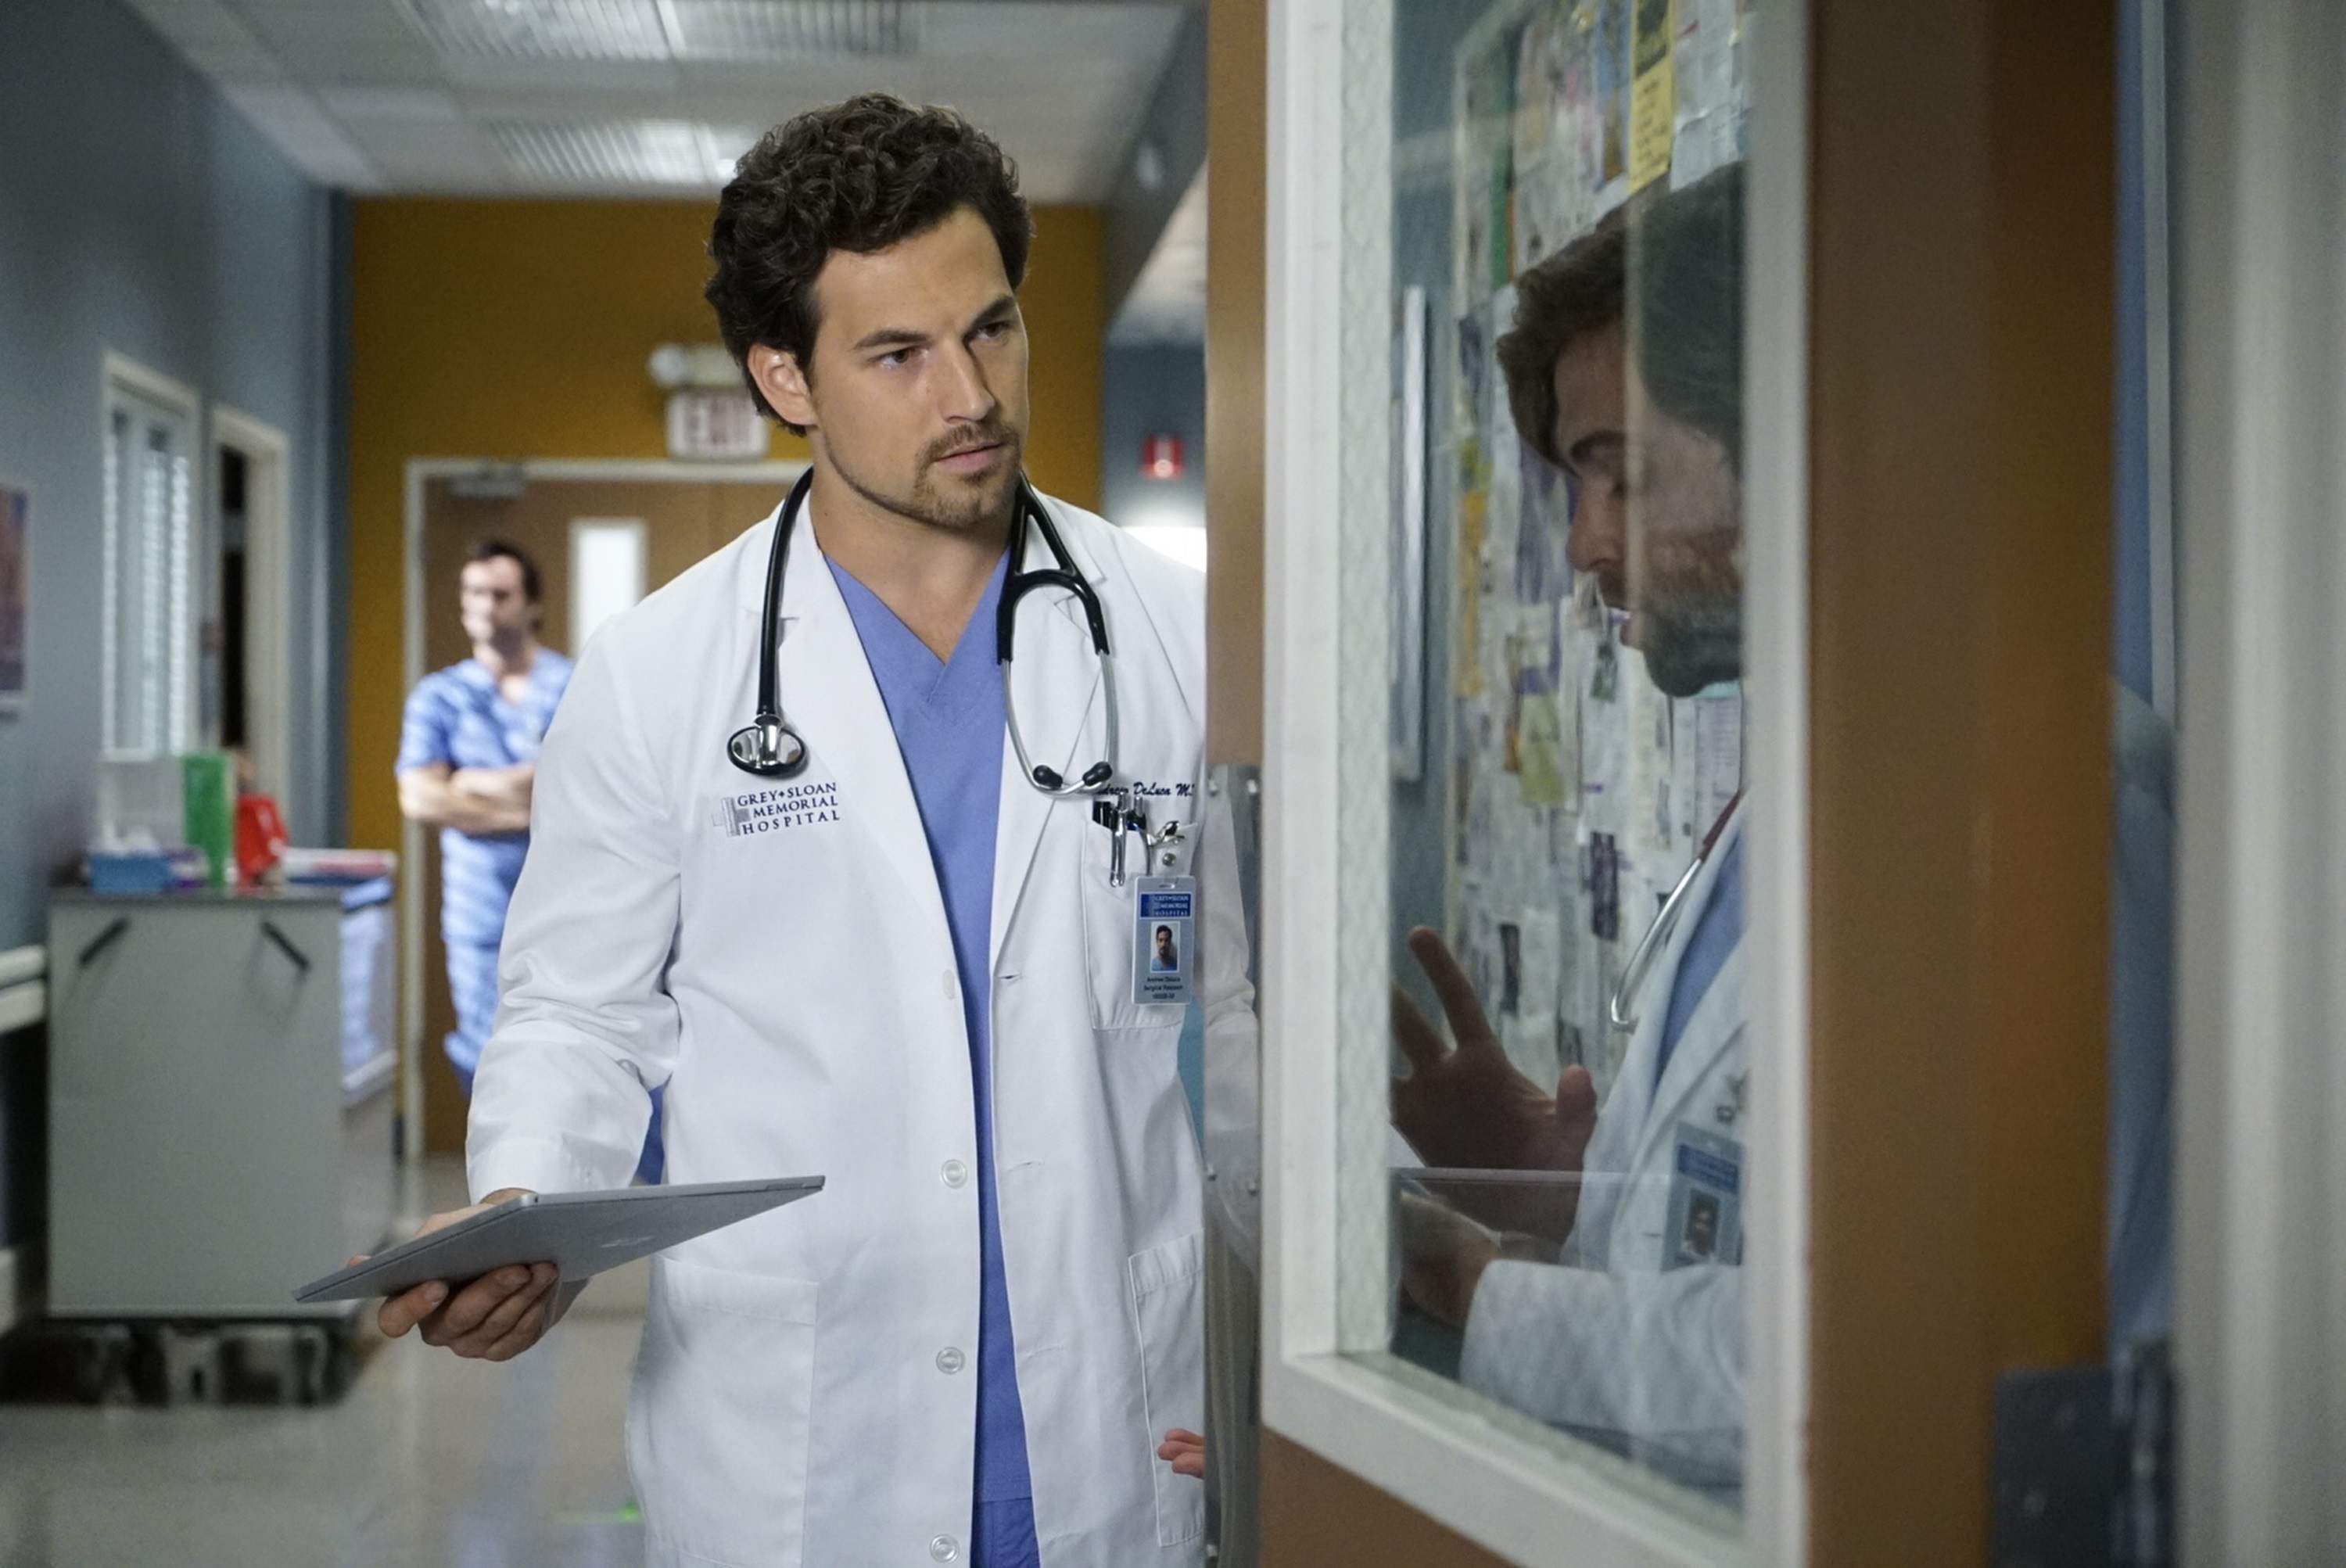 Greys Anatomy star Giacomo Gianniotti as Andrew DeLuca